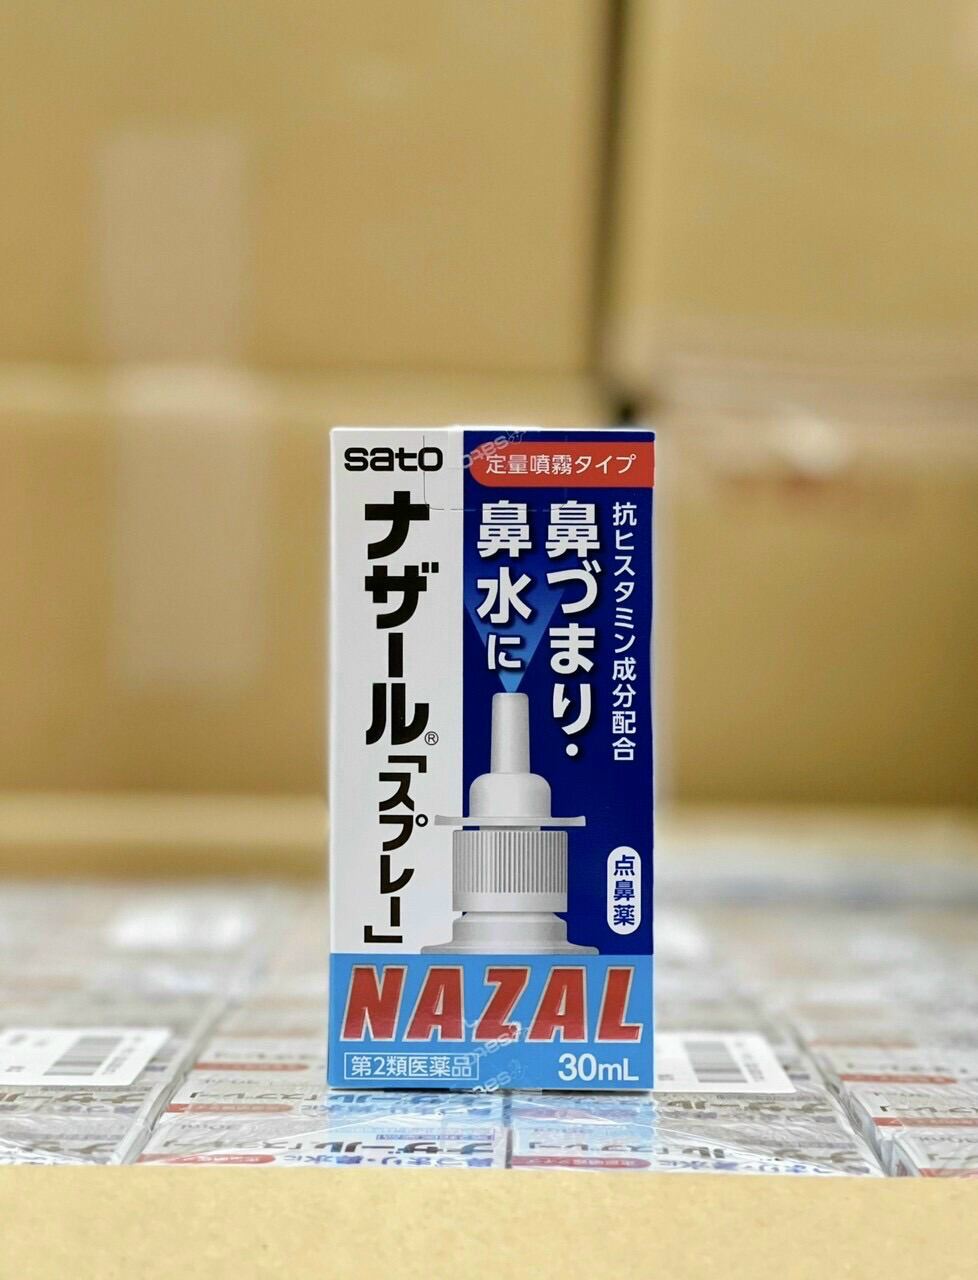 Dụng cụ hỗ trợ thông mũi, chống viêm xoang mũi hiệu quả Nazal Nội địa Nhật Bản